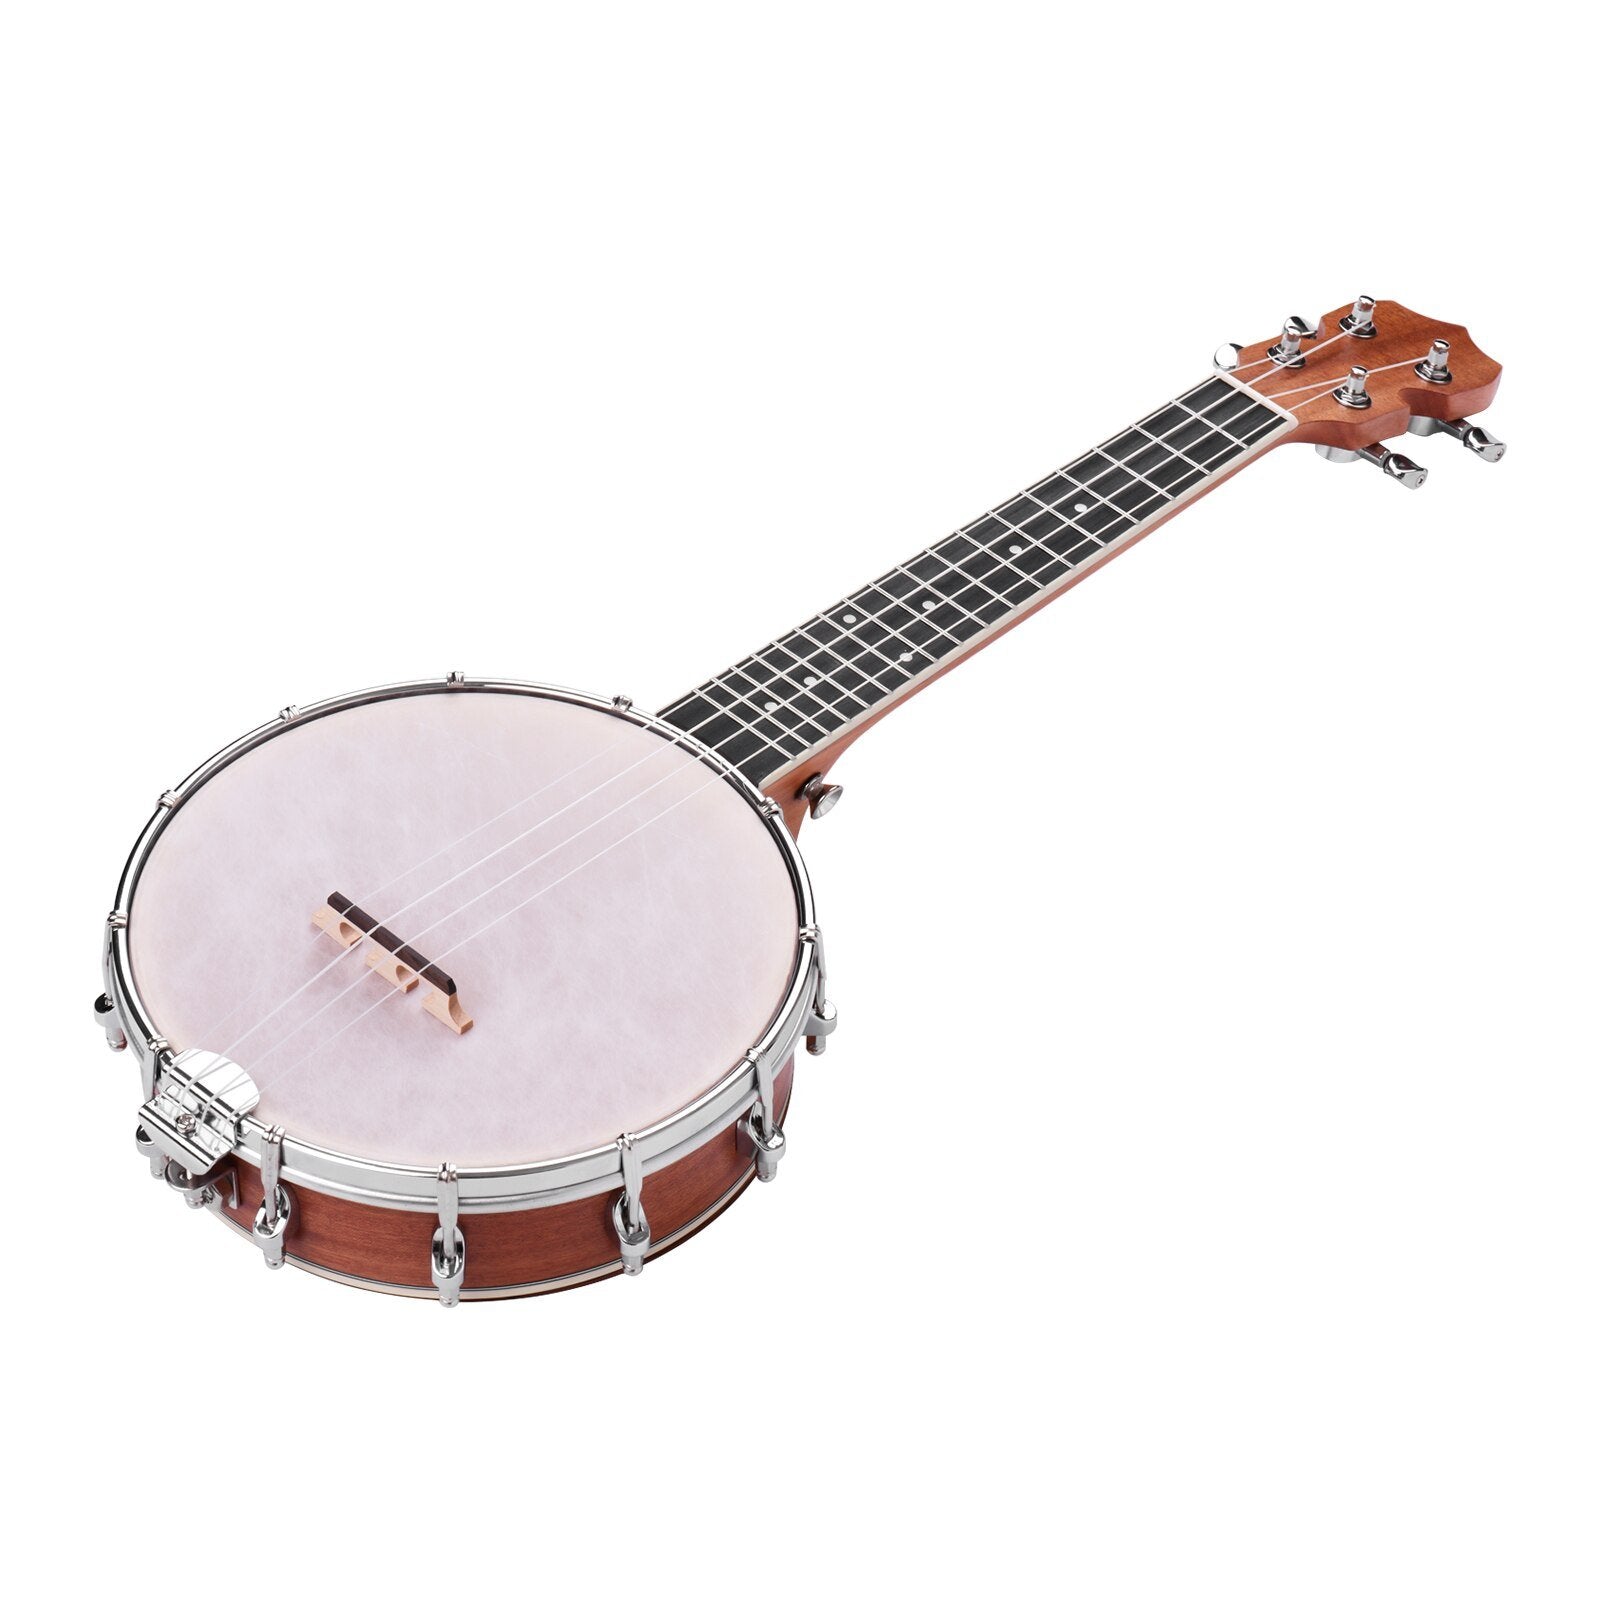 Banjolele Concert 23 inch Banjo Ukulele 4 String Maple Body Okoume Neck with Tuning Wrench Bridge Positioning Ruler - AKLOT